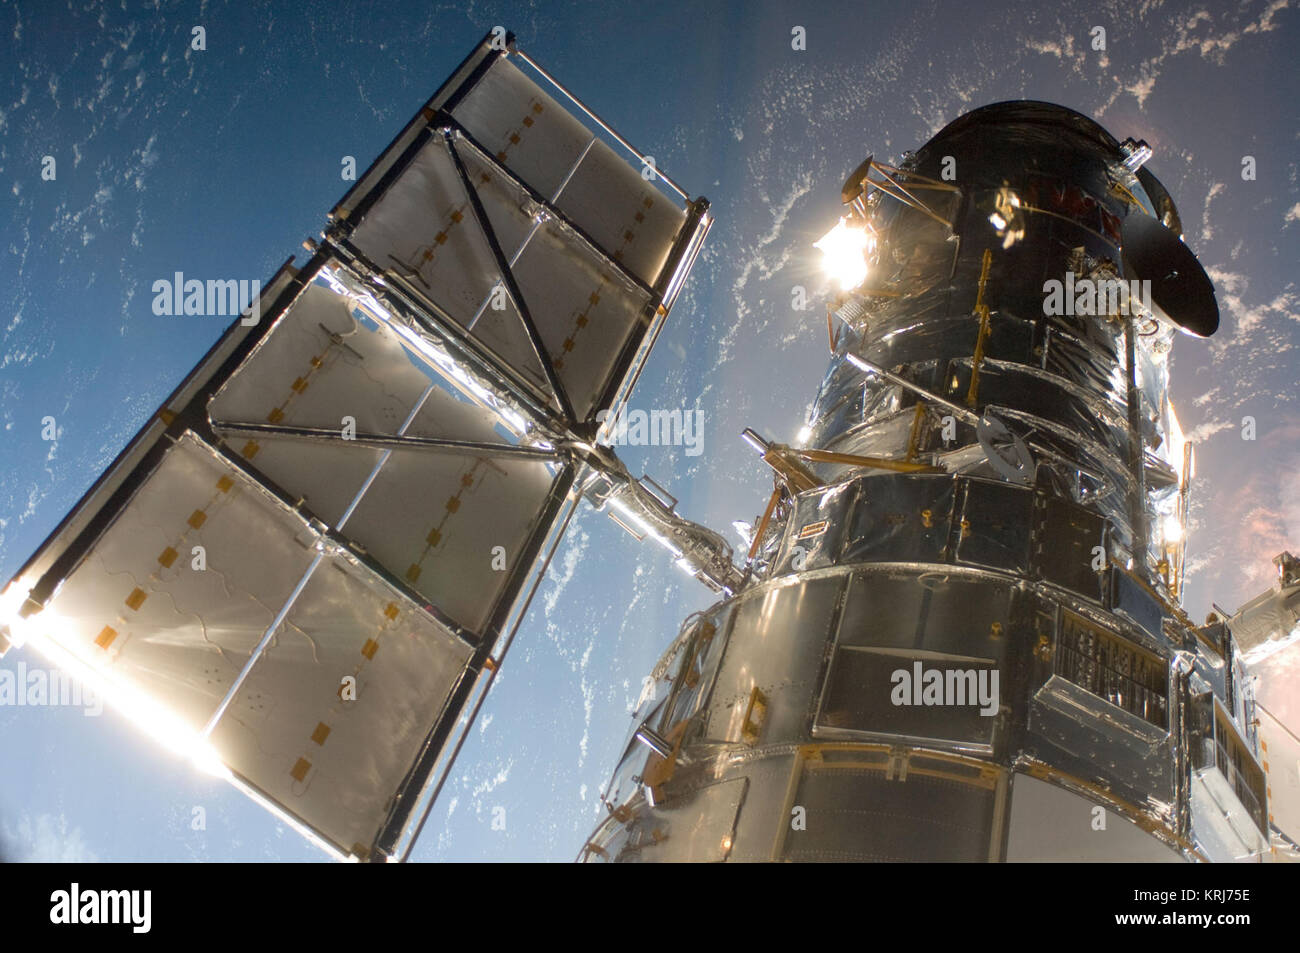 Das Hubble Space Teleskop in ein Bild von Servicing Mission 4 crewmember nur nach dem Space Shuttle Atlantis Hubble mit dem Roboterarm am 13. Mai 2009 erfasst aufgeschnappt, Beginn der Mission zu aktualisieren, das Teleskop, und reparieren Sie sie. Das Hubble-weltraumteleskop ist ein Projekt internationaler Zusammenarbeit zwischen der NASA und der Europäischen Weltraumorganisation. Die NASA Goddard Space Flight Center verwaltet das Teleskop. Das Space Telescope Science Institut betreibt Hubble Science Operations. Goddard ist verantwortlich für HST Projekt Management, einschließlich Mission und Science Operations, Service Missionen, und ein Stockfoto